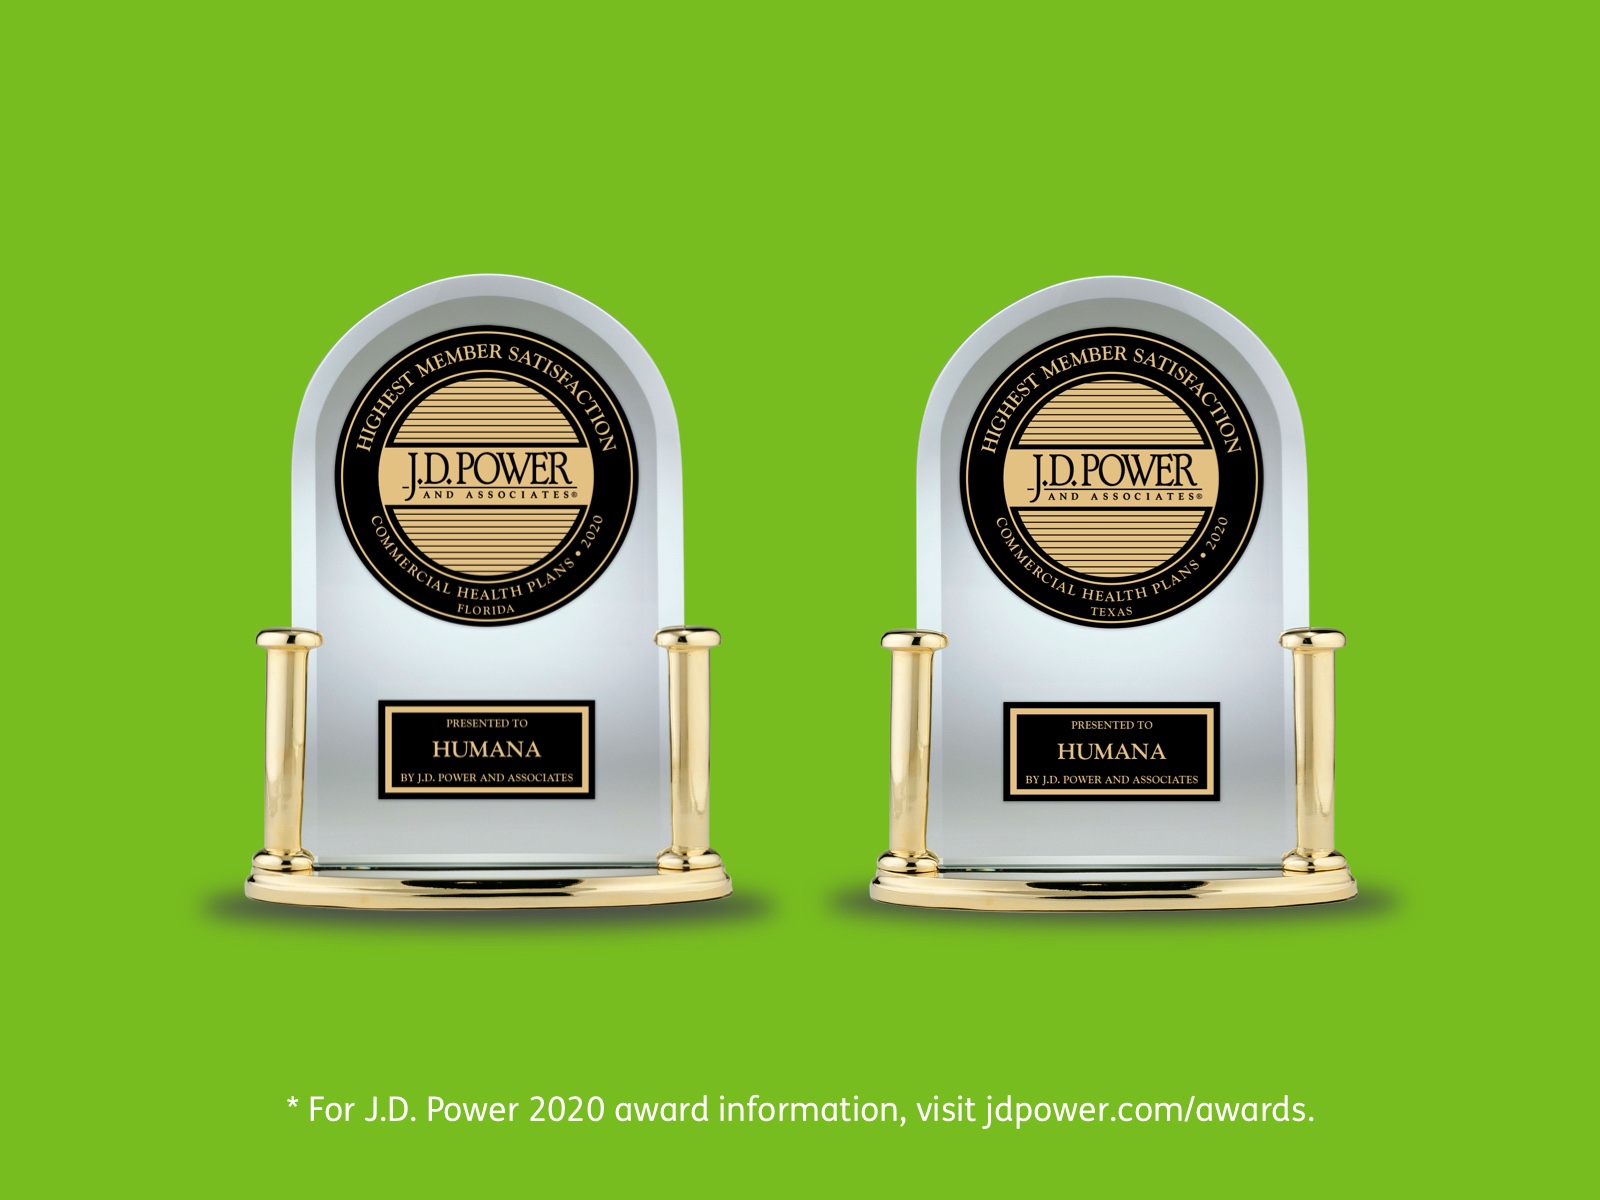 For J.D. Power 2020 award information, visit jdpower.com/awards.